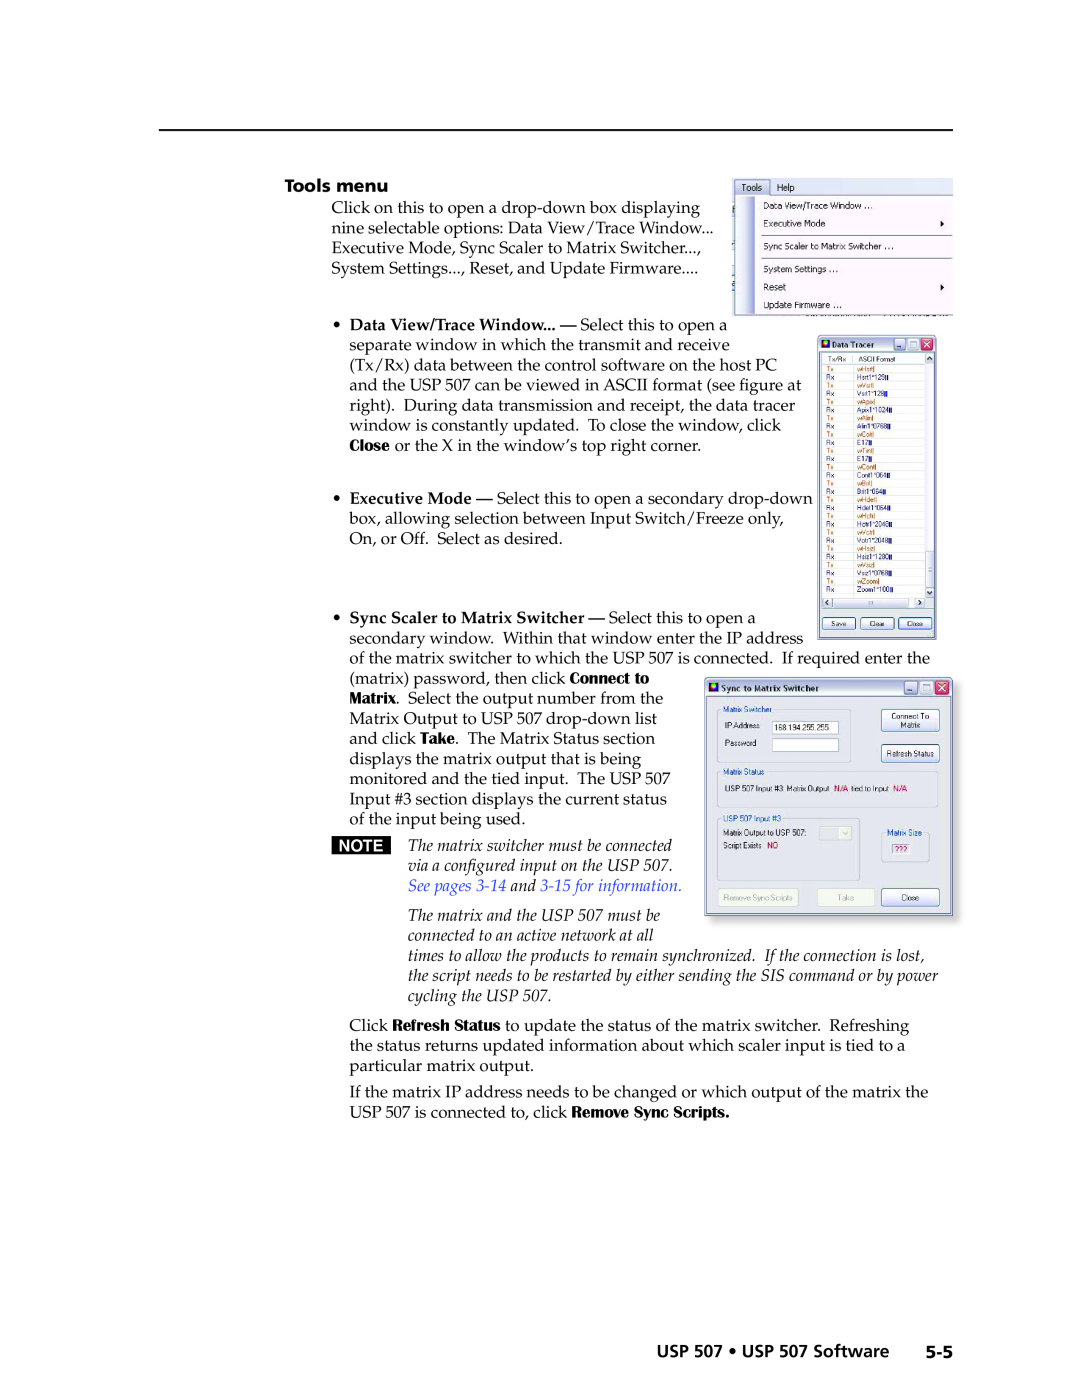 Extron electronic manual Tools menu, USP 507 • USP 507 Software 